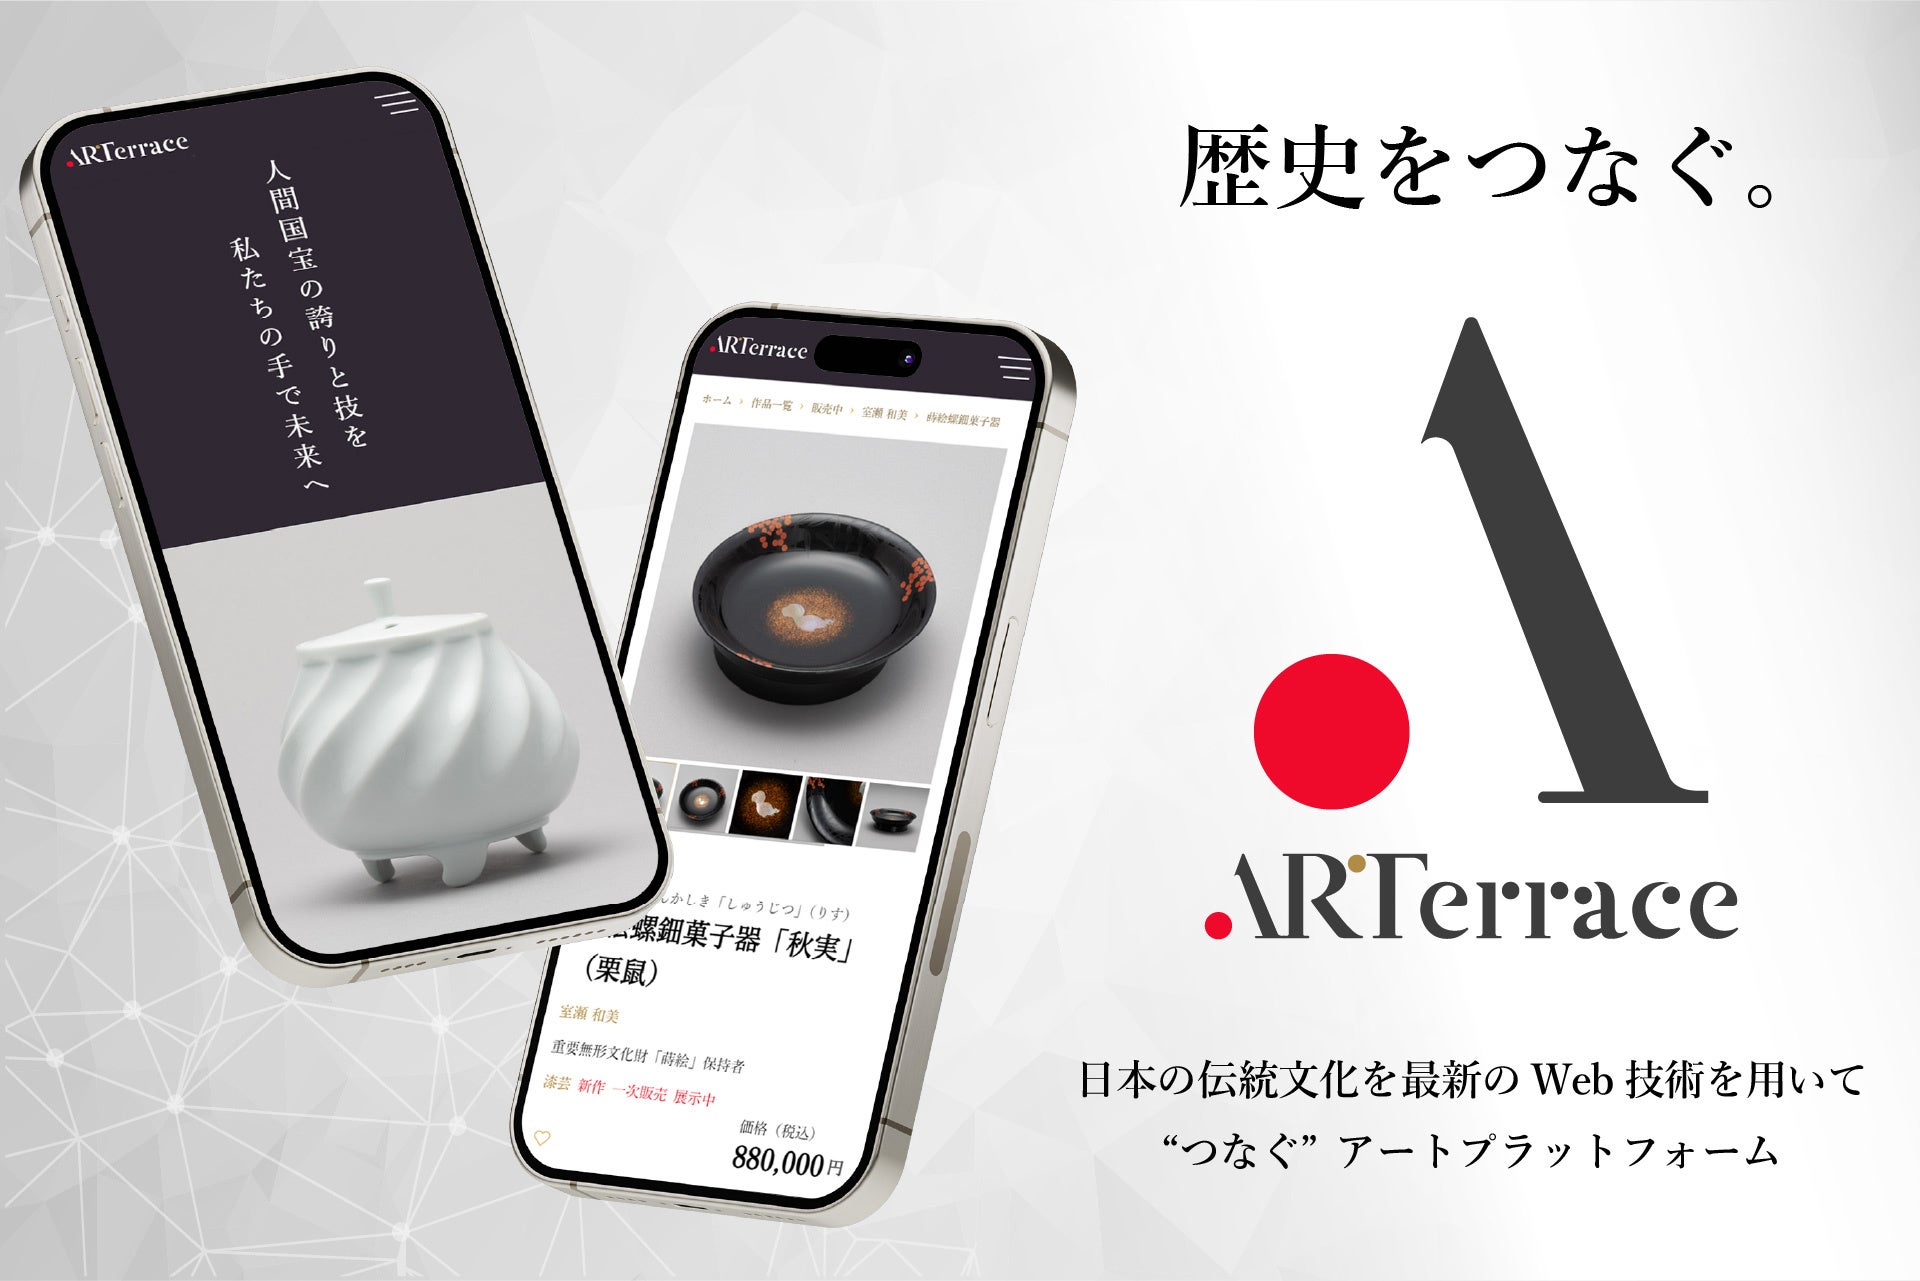 日本の伝統文化を最新のWeb技術を用いて“つなぐ”アートプラットフォーム「ARTerrace」、本日サービス開始